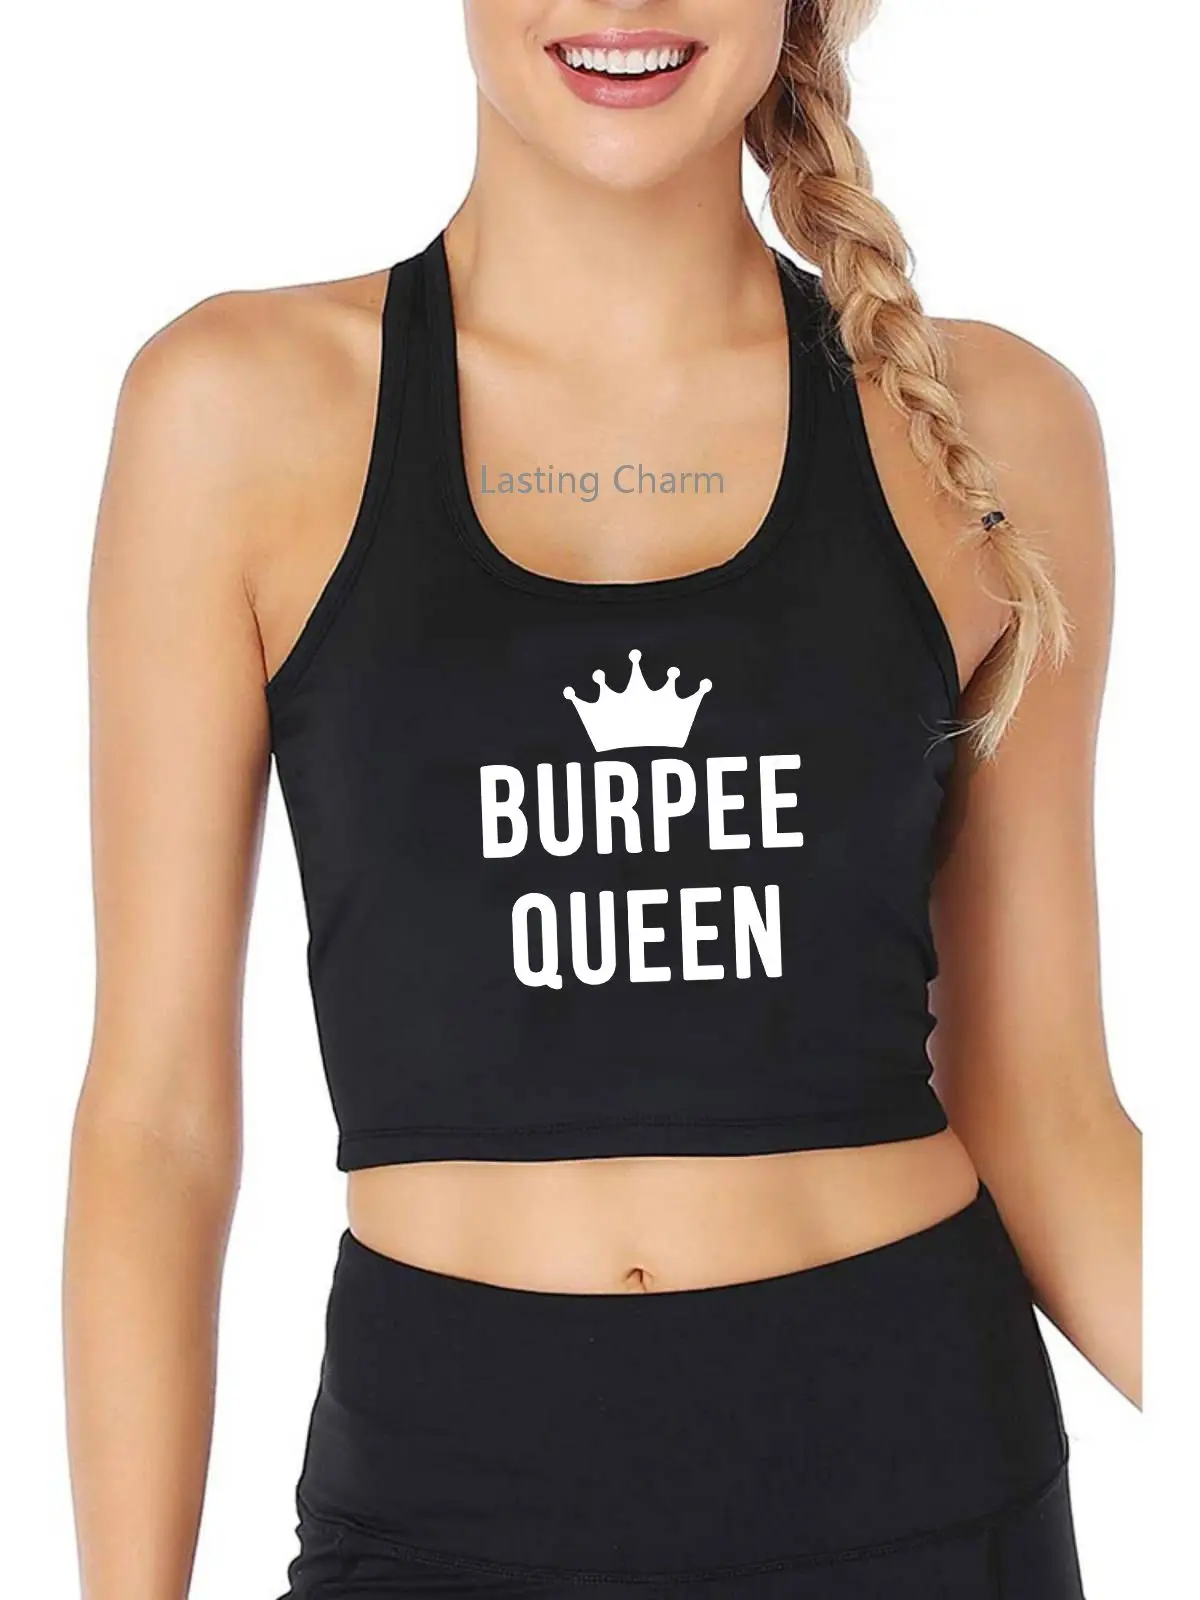 burpee queen